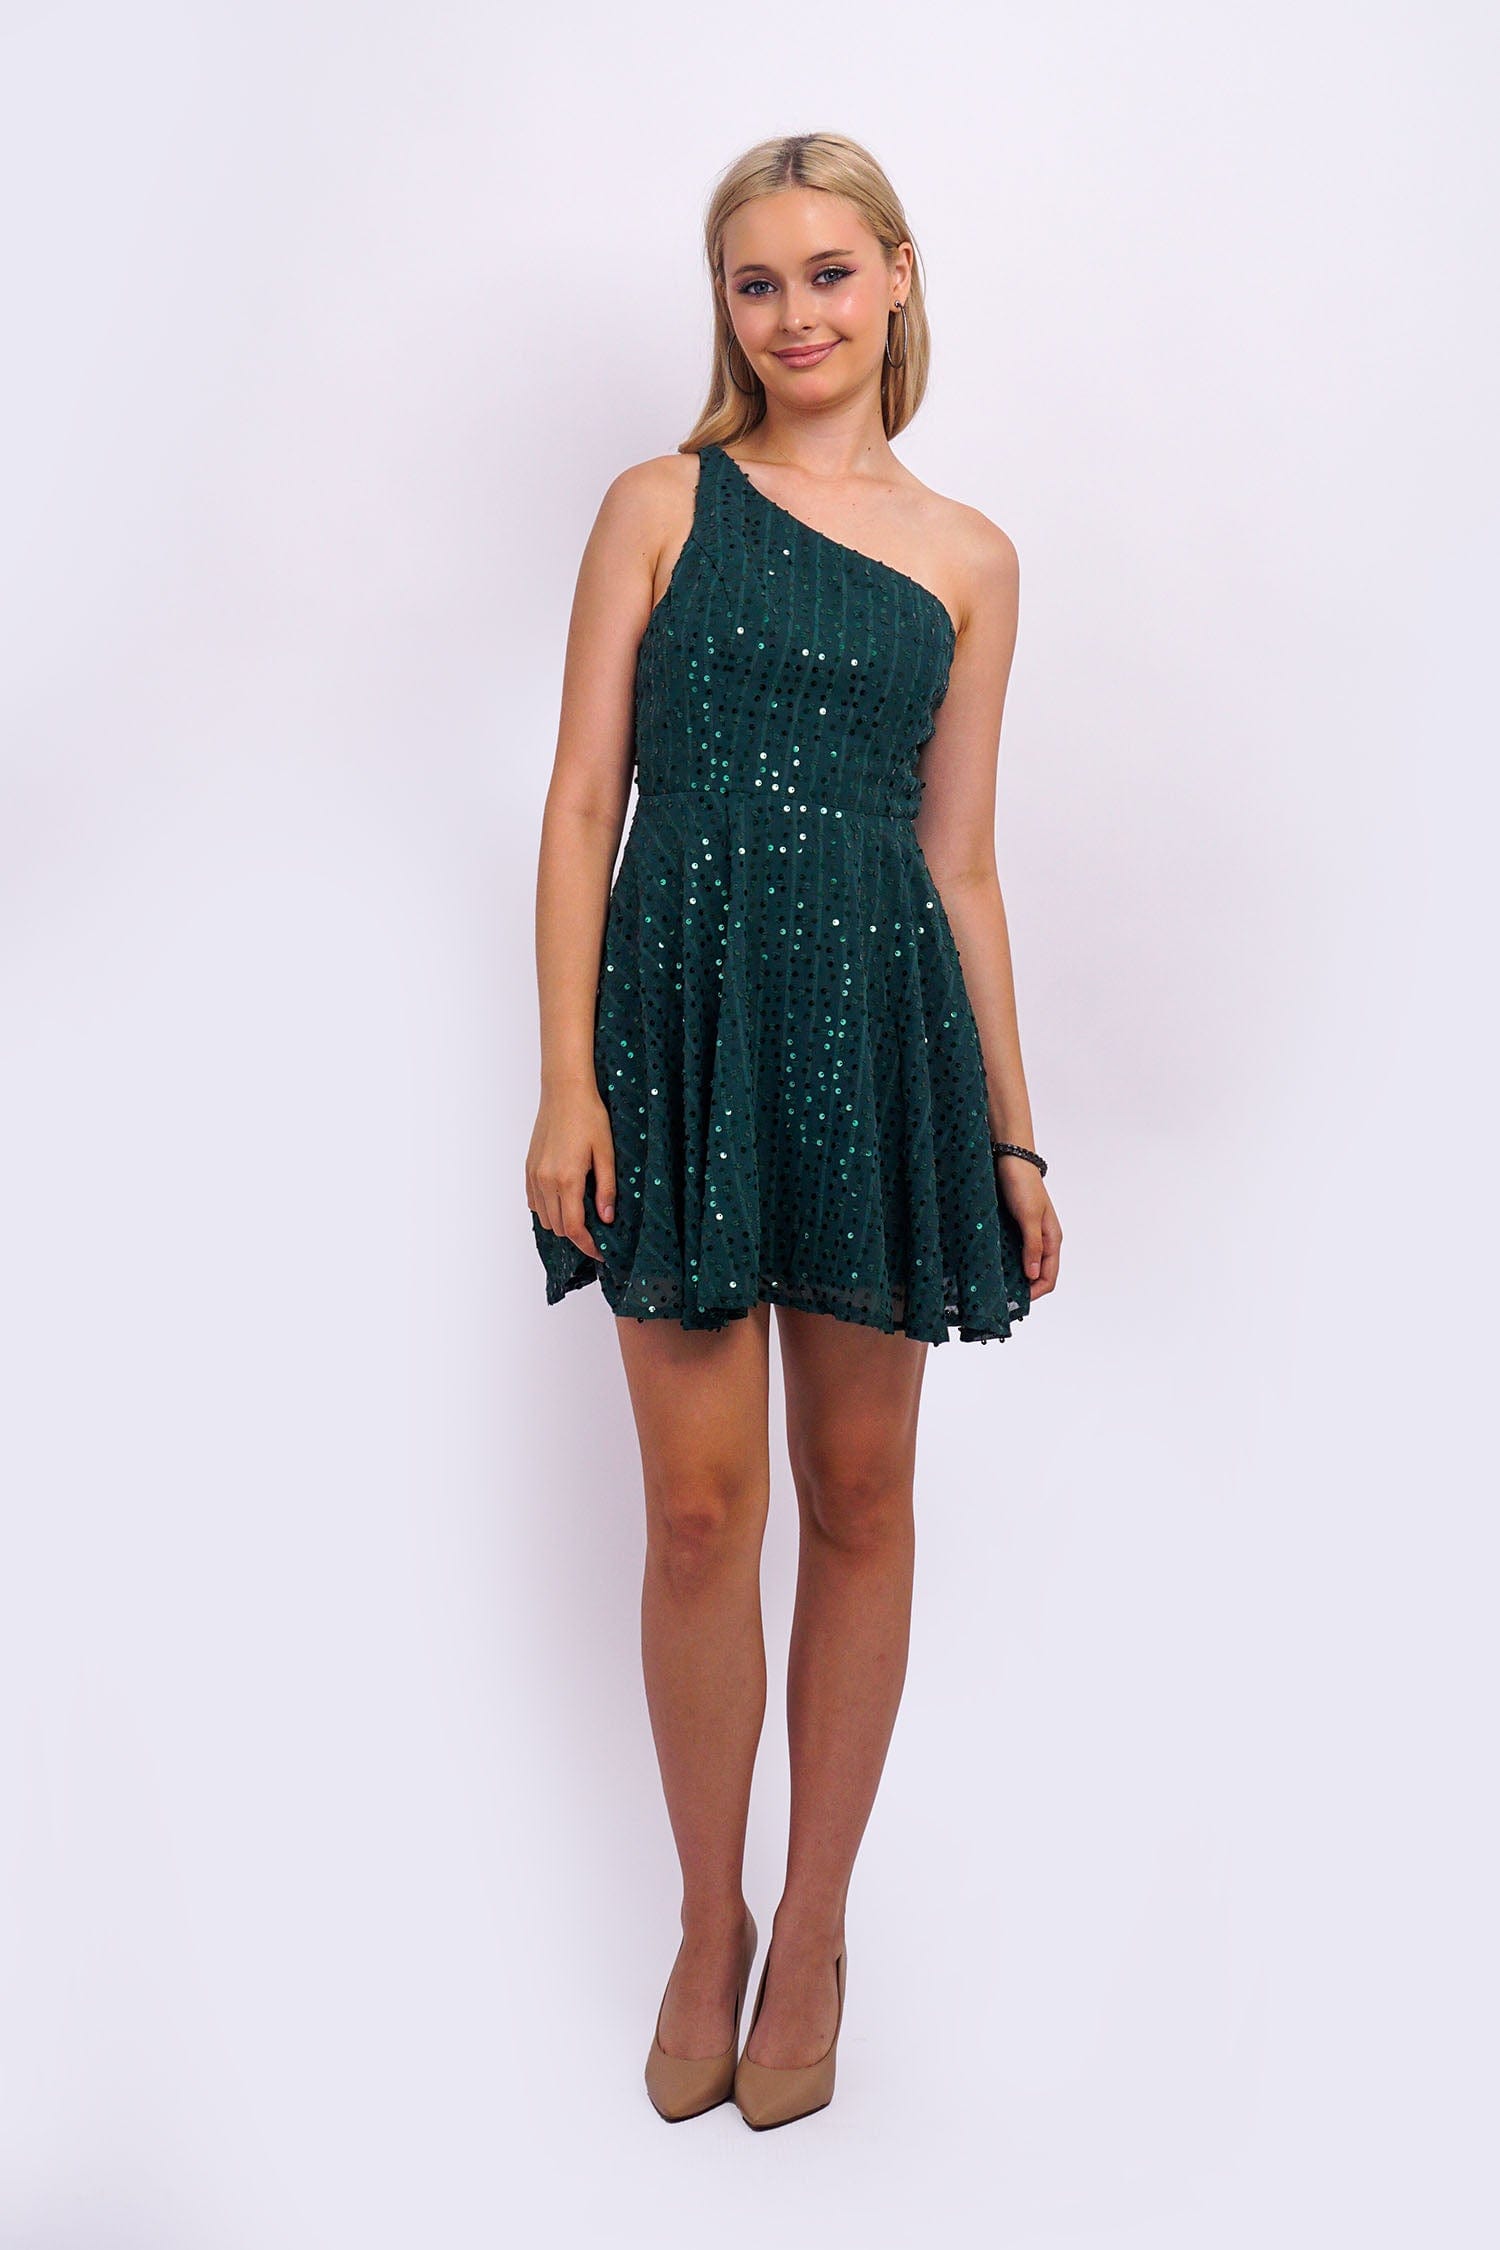 DCD DRESSES Emerald One Shld Sequin Skater Dress